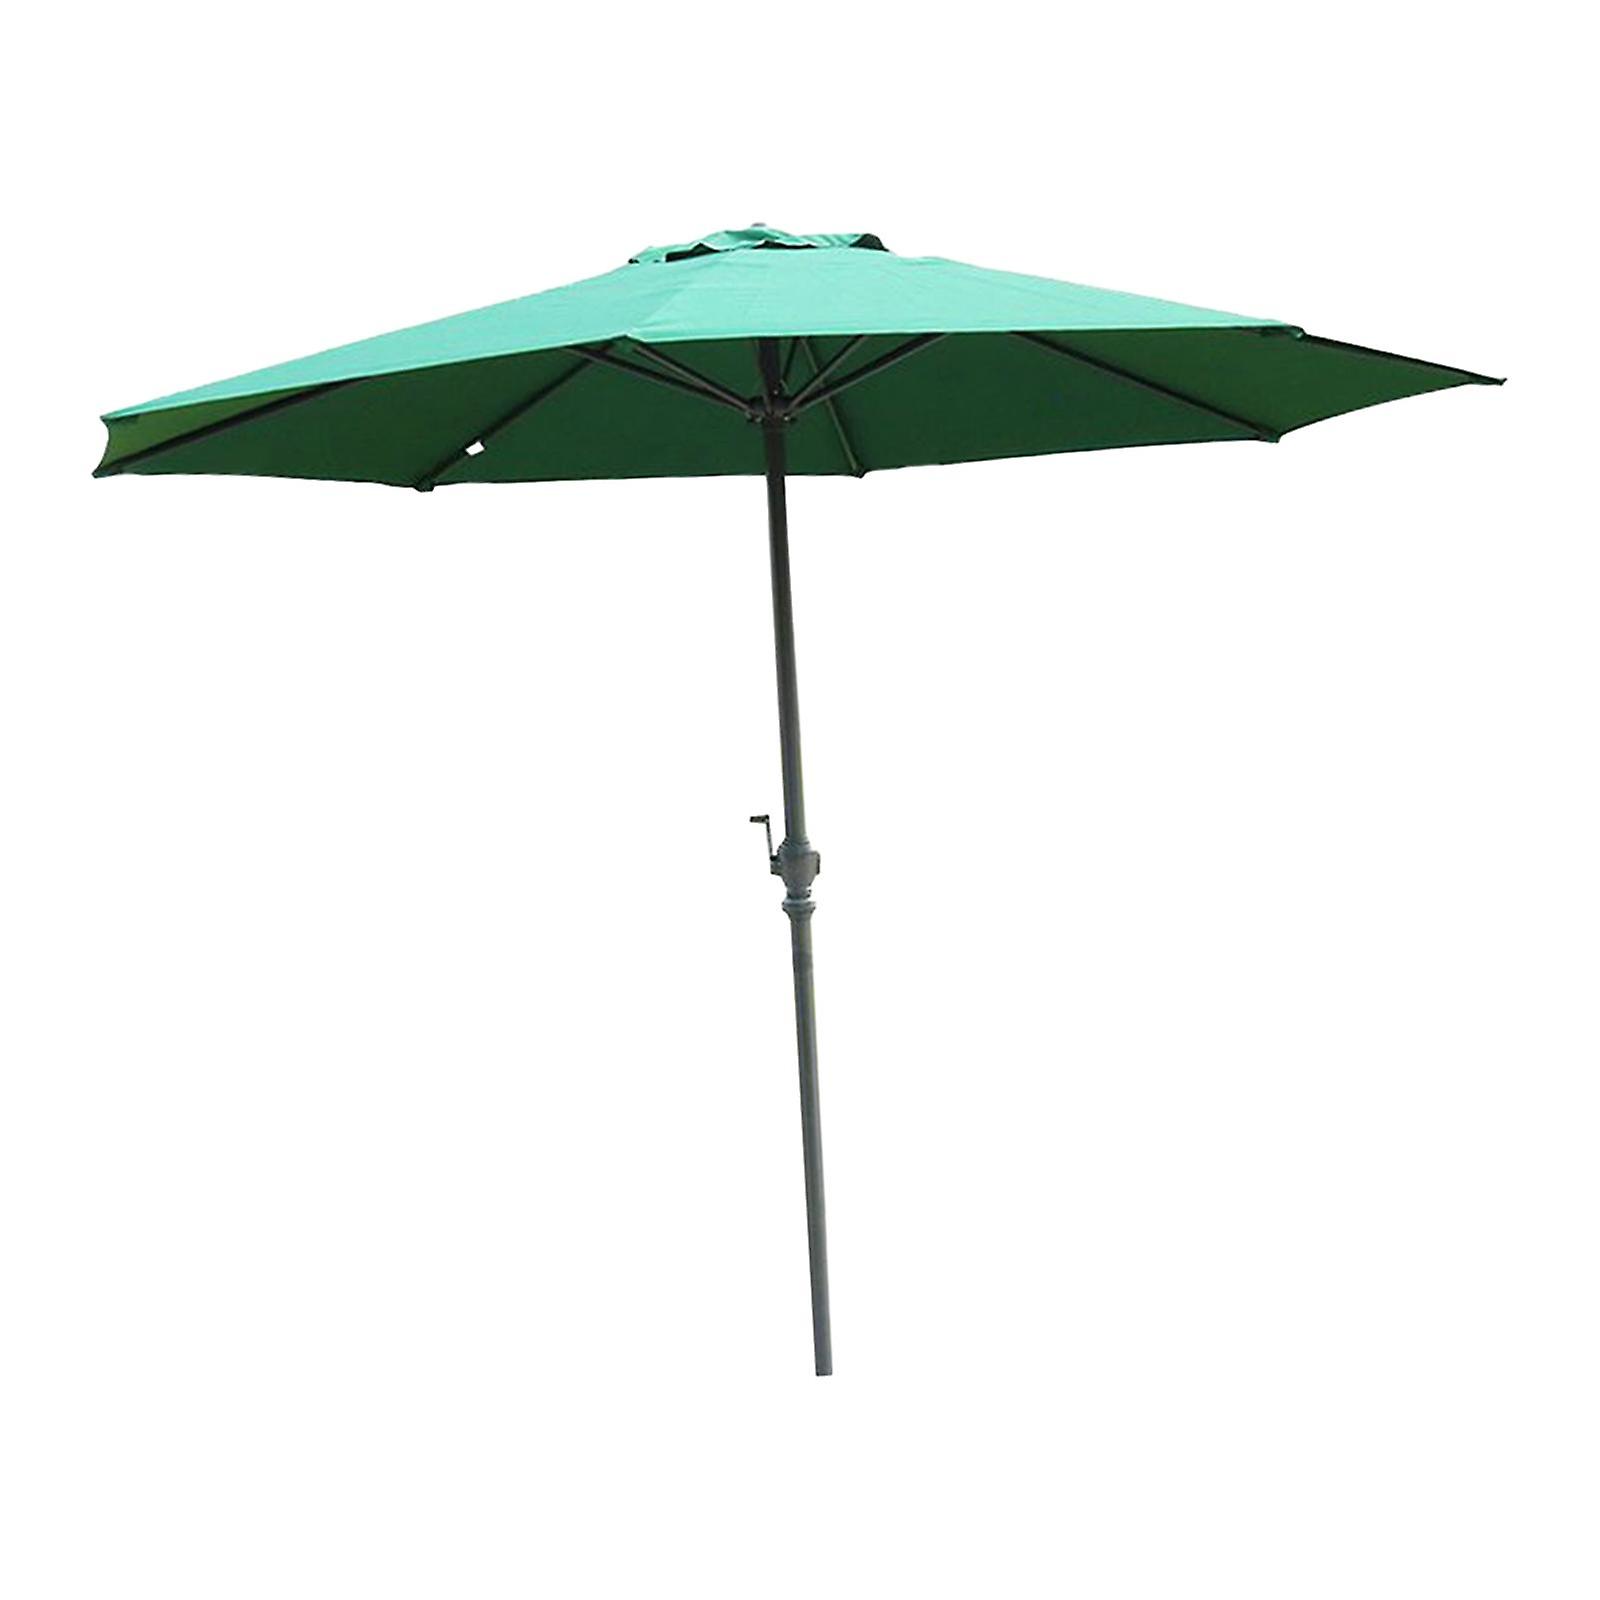 Outdoor Sunshade Umbrella Portable Beach Umbrella For Garden Courtyard Style E